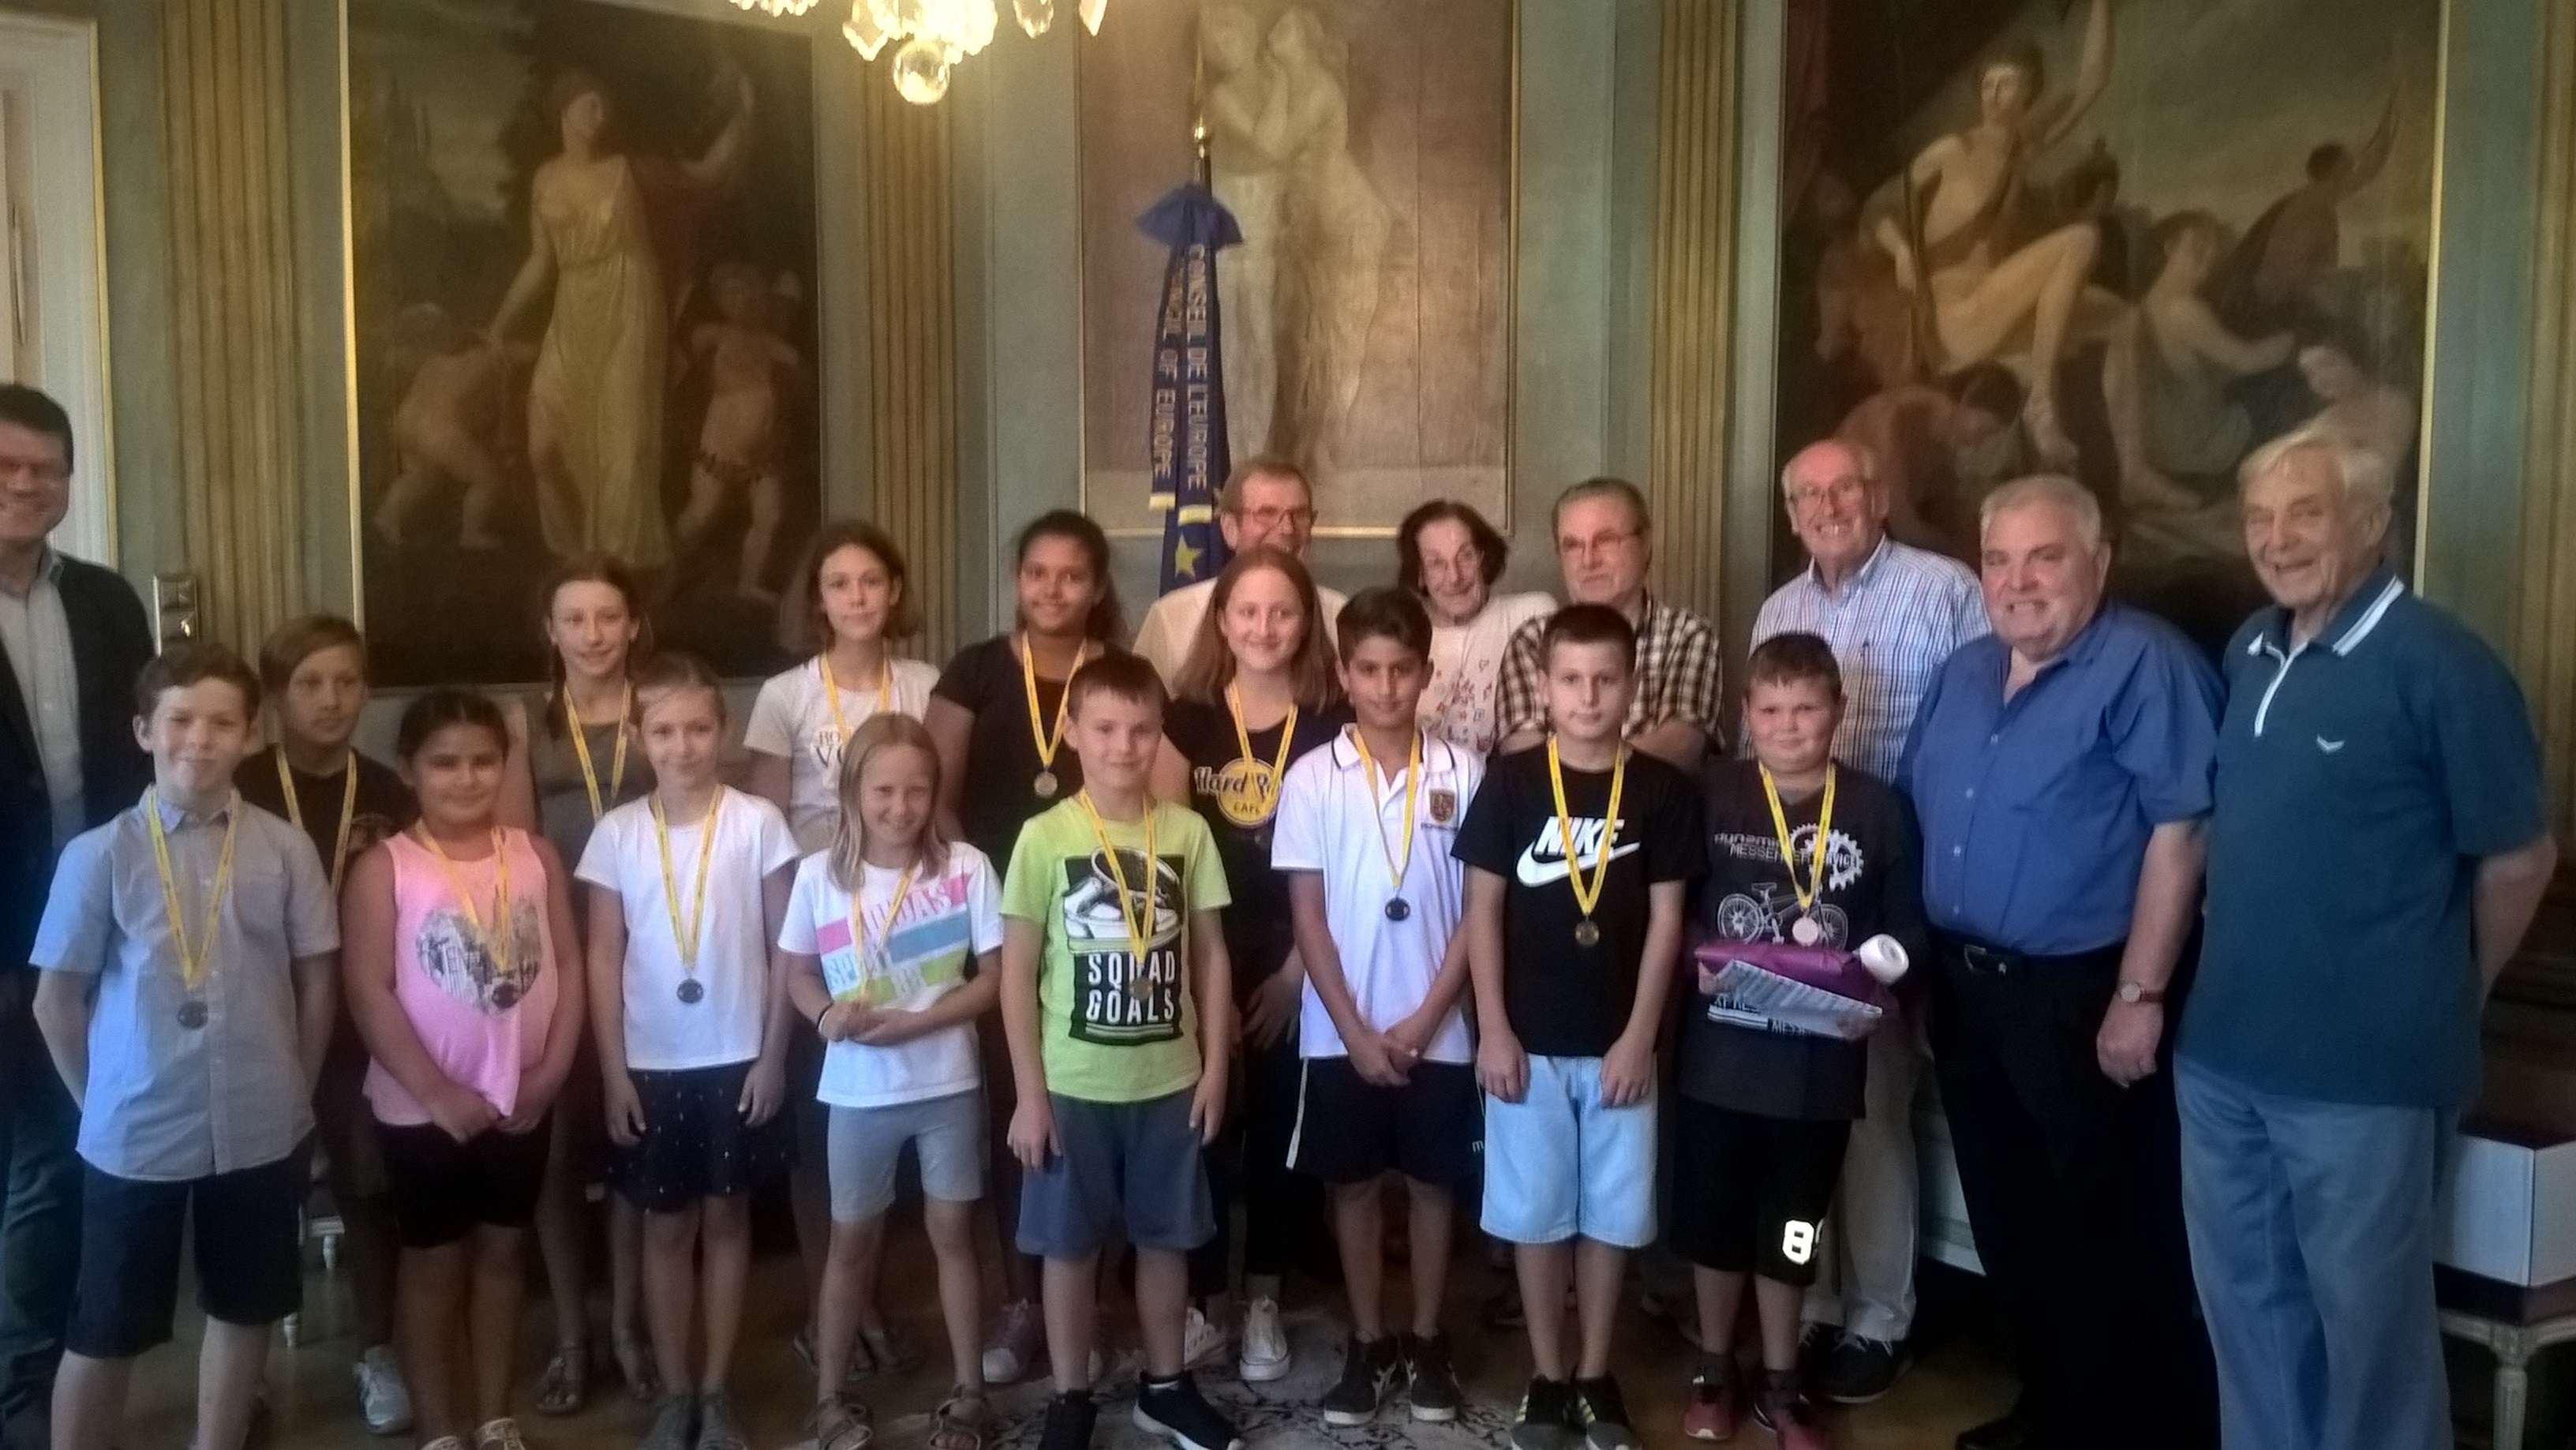  Die Siegerinnen und Sieger des Fahrradturniers im diesjährigen Leimener Ferienprogramm wurden im Spiegelsaal des Leimener Rathauses ausgezeichnet 